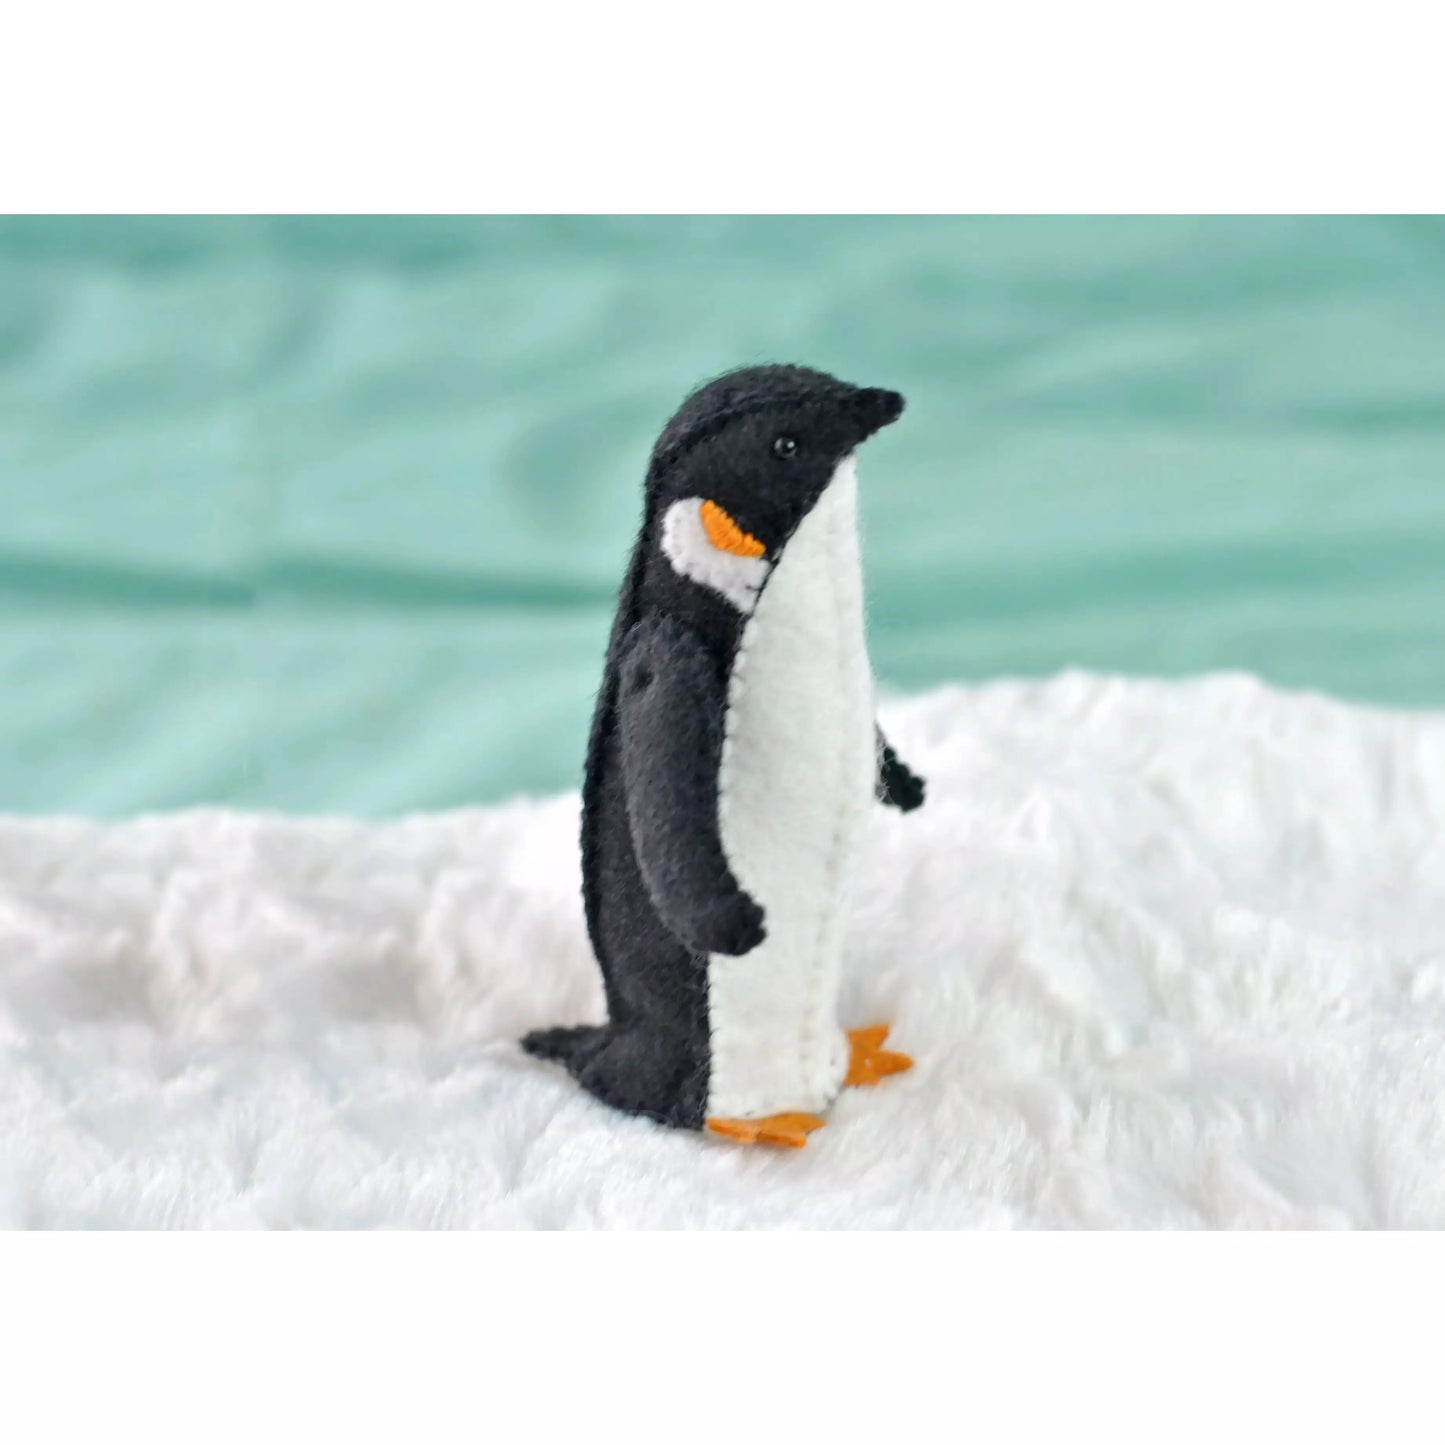 DelilahIris Designs ~ Felt Penguin Sewing Kit